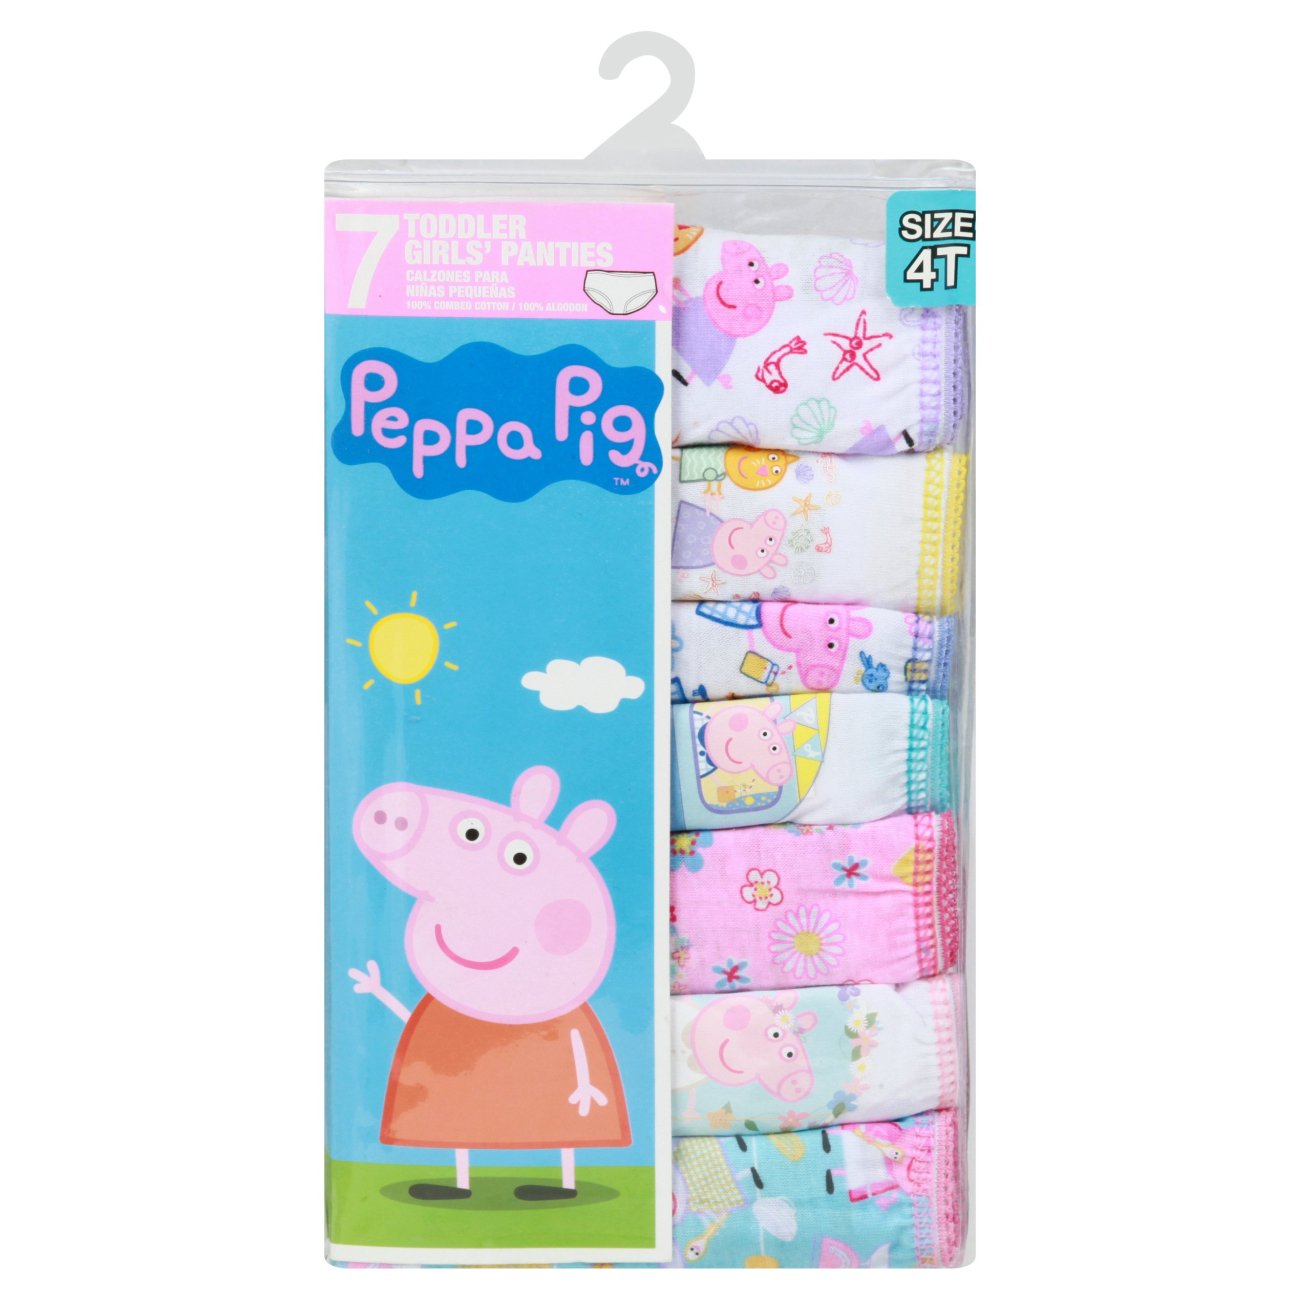 Peppa Pig Underwear Size 2-3T 4 Pack